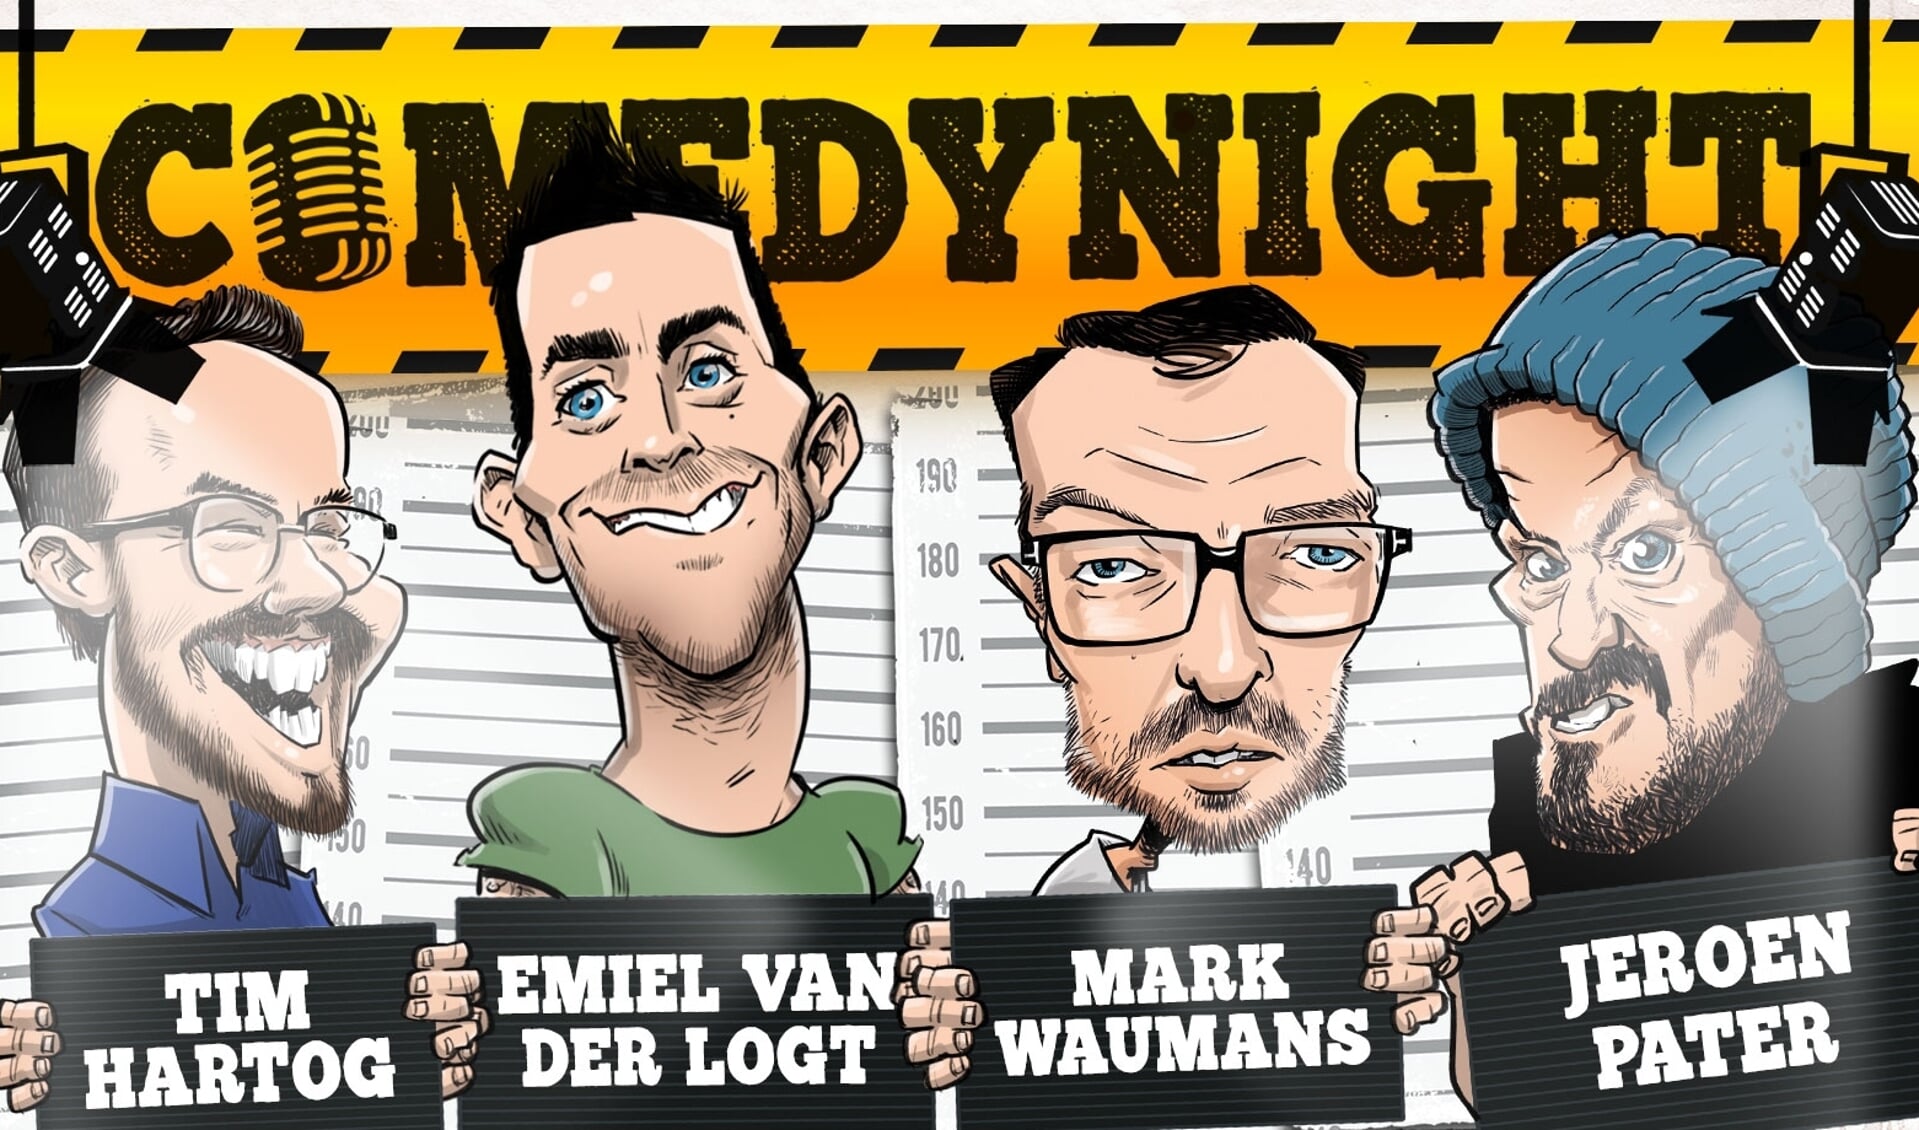 Comedynight met Emiel van der Logt, Tim Hartog, Mark Waumans en Jeroen Pater.